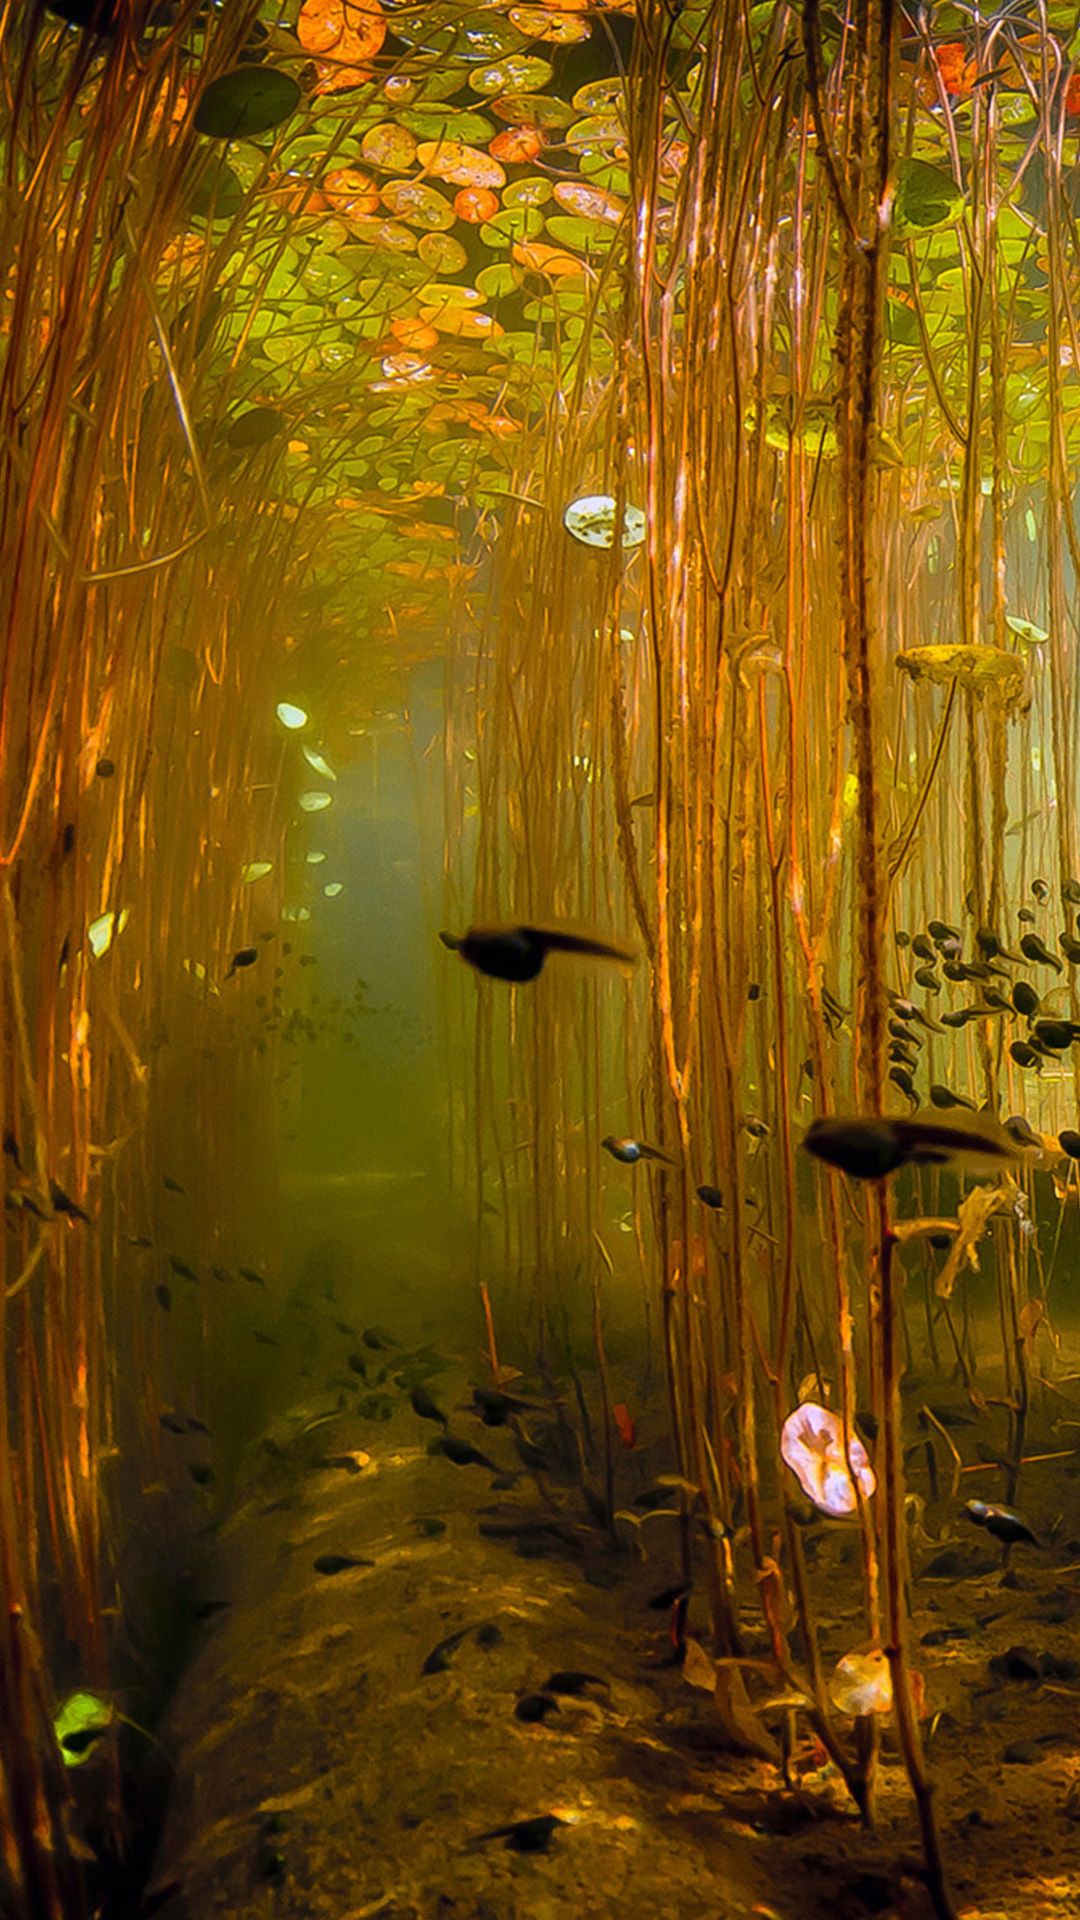 Water Tadpoles Underwater iPhone 8 Wallpaper Free Download